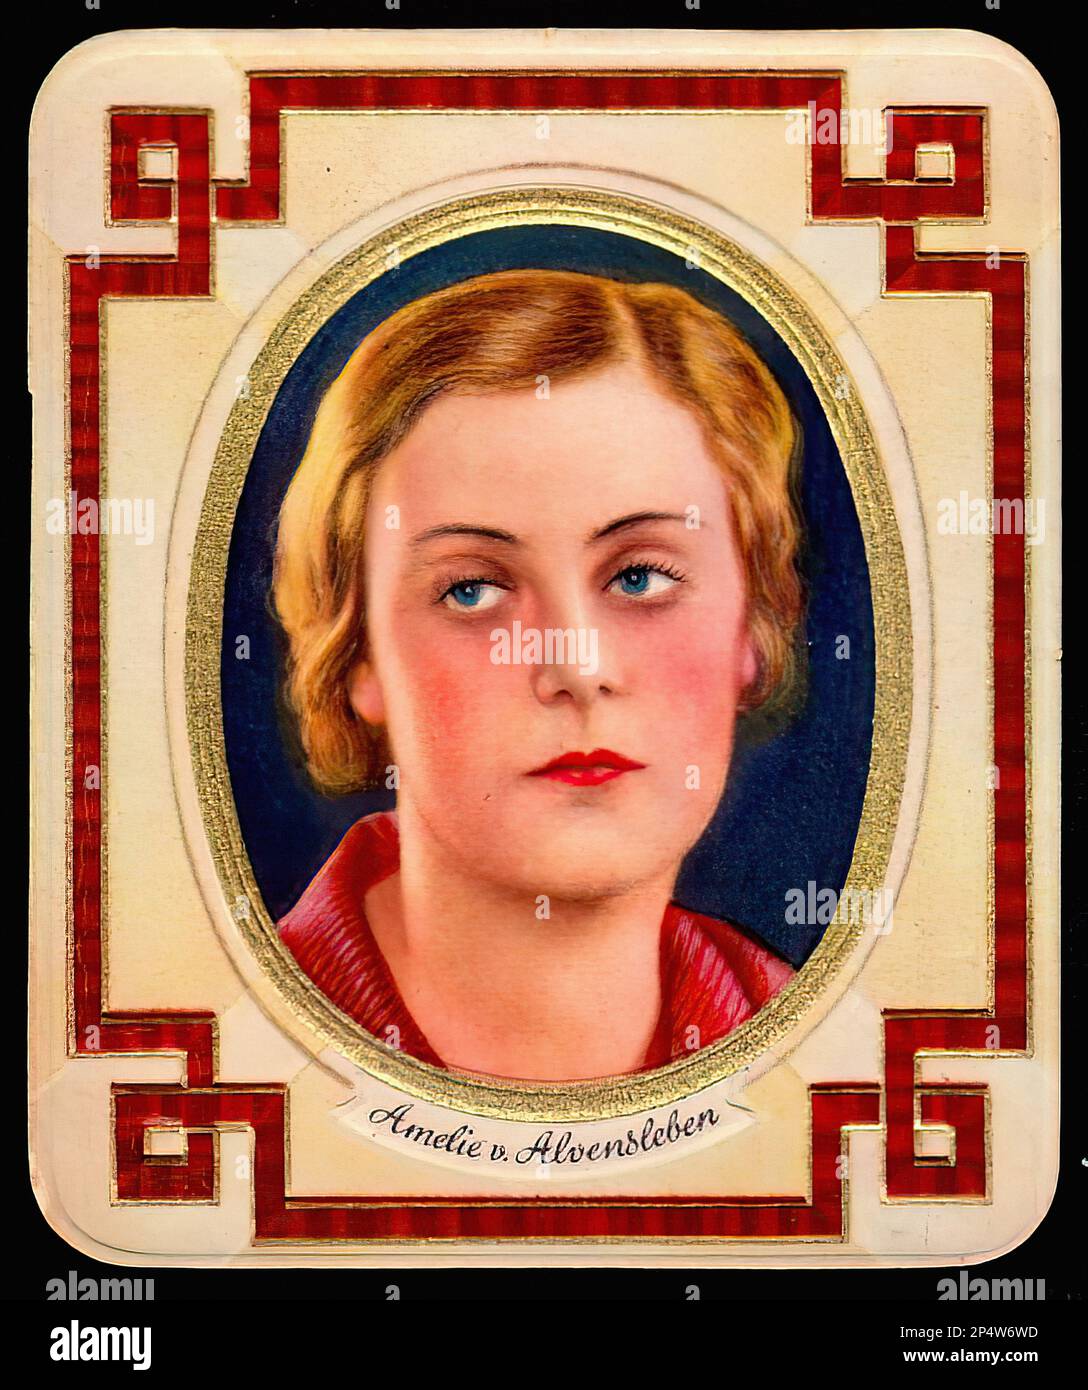 Portrait of Amelie von Alvensleben - Vintage German Cigarette Card Stock Photo